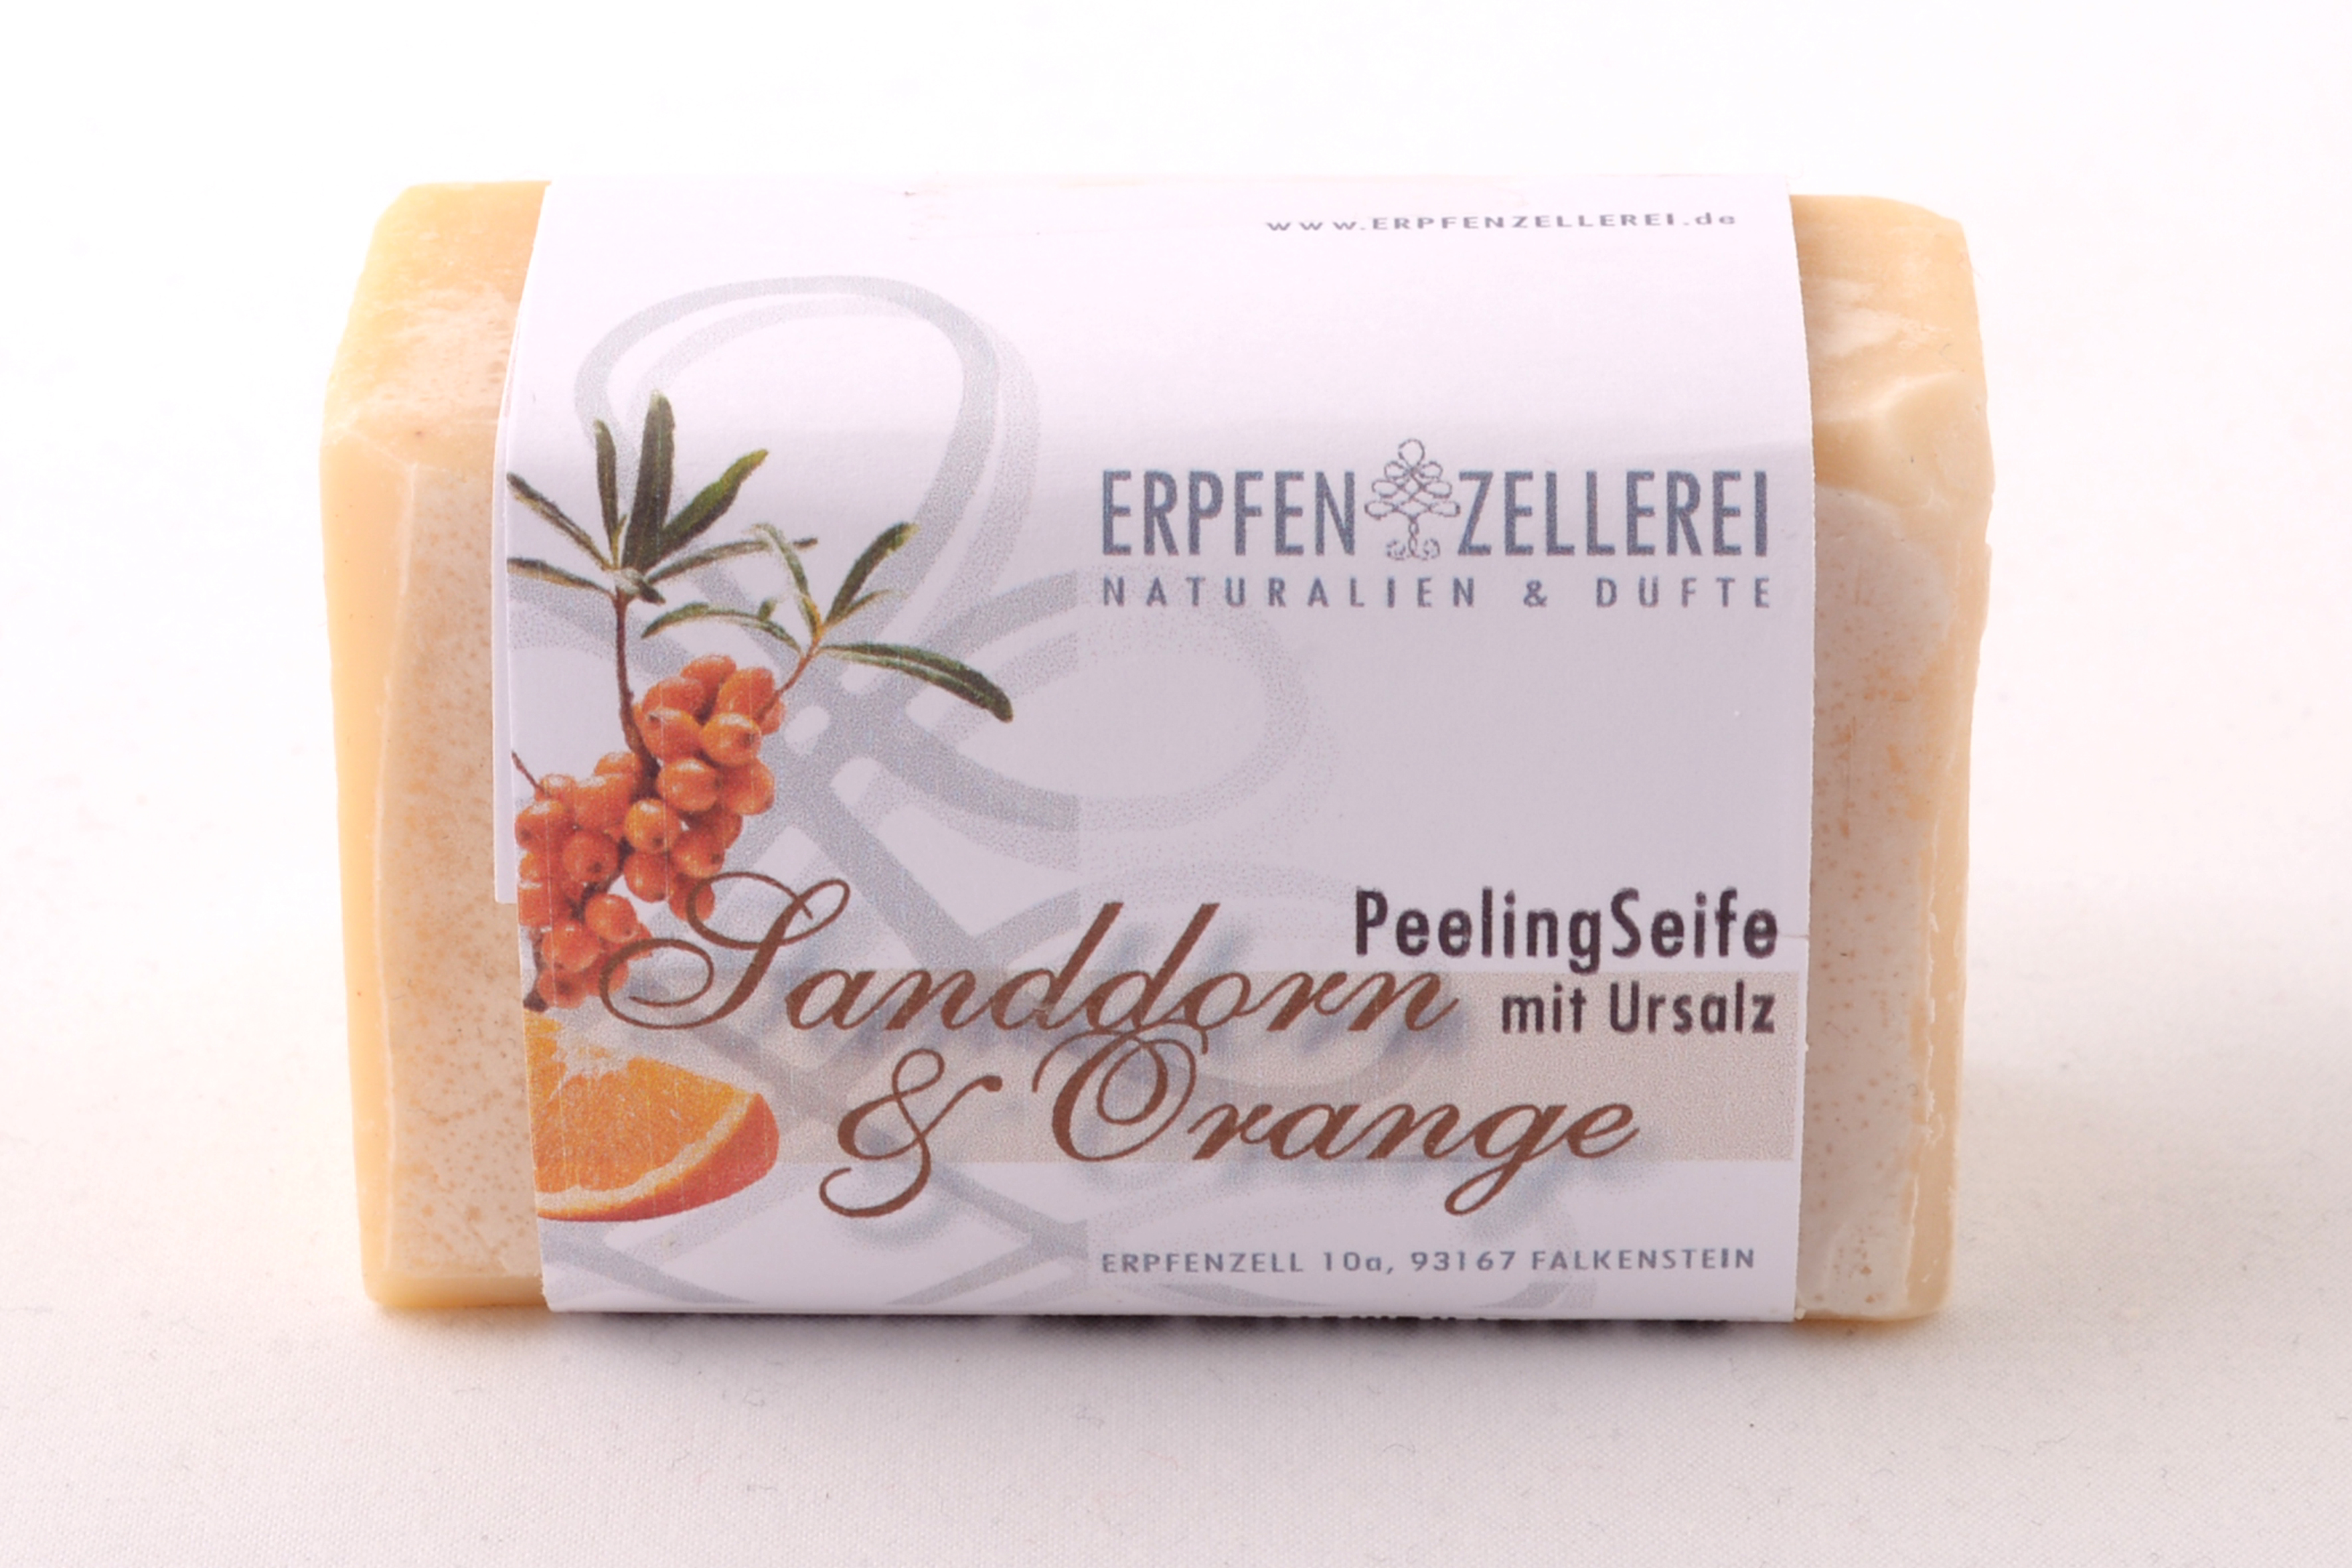 Peelingseife "Sanddorn & Orange" mit Ursalz Bio